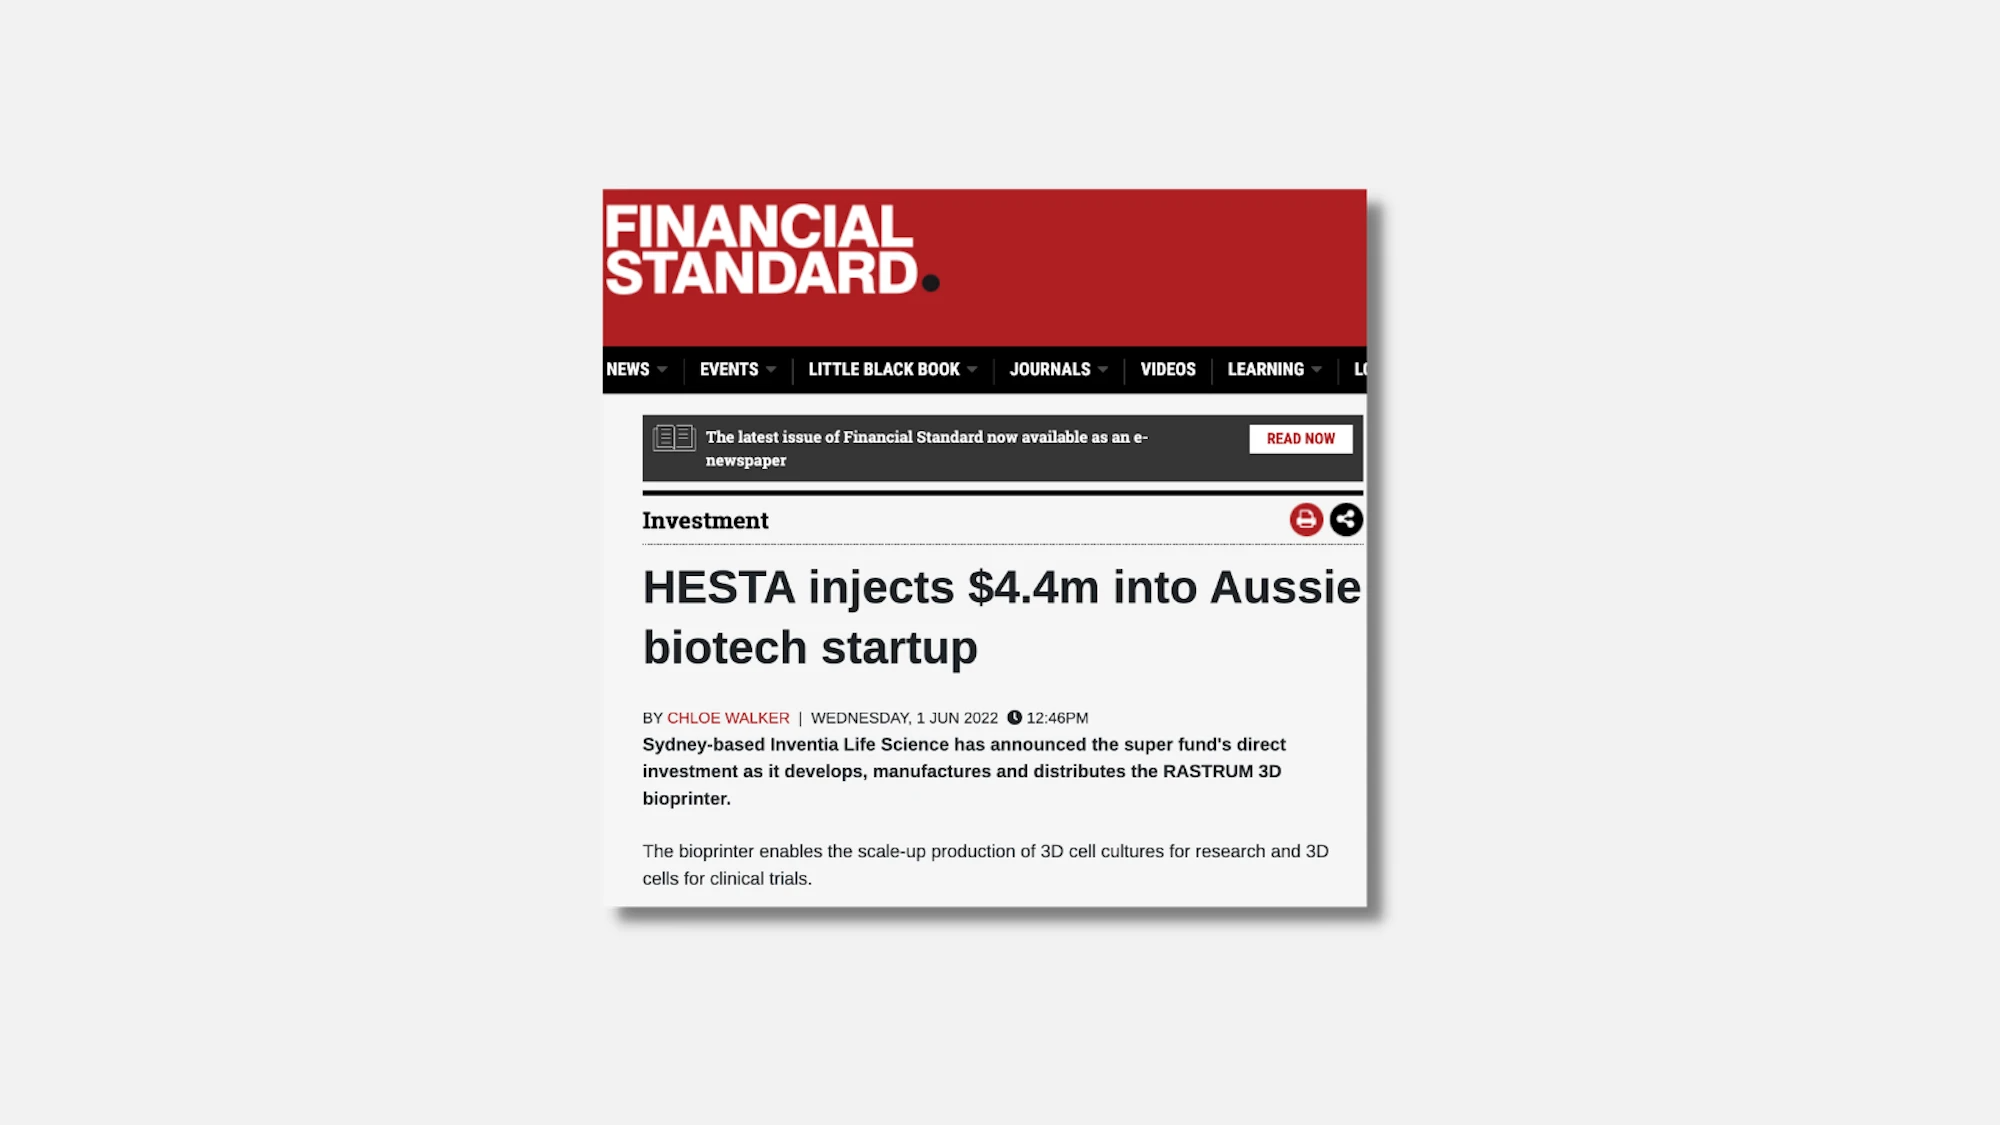 HESTA injects $4.4m into Aussie biotech startup | Financial Standard